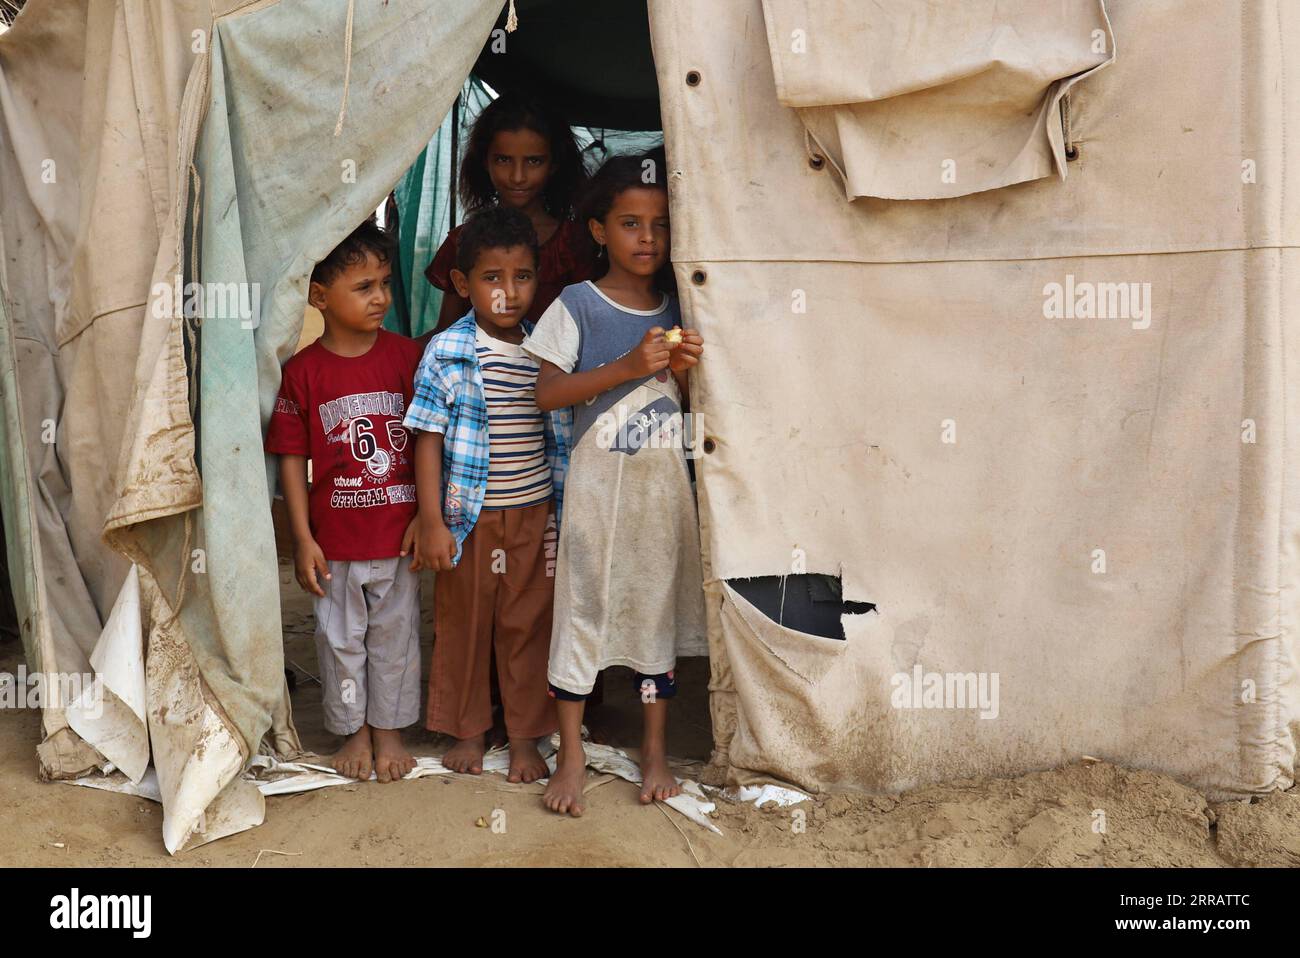 210817 -- HAJJAH, 17. August 2021 -- Kinder werden am 14. August 2021 in einem abgelegenen Dorf im Bezirk Midi in der Provinz Hajjah im Nordjemen gesehen. In den belagerten Bezirken der Provinz Hajjah im Nordjemen wurden laut den örtlichen Gesundheitsbehörden seit mehr als drei Jahren etwa 11.350 Kinder nicht gegen vermeidbare Krankheiten geimpft. ZU GEHEN MIT Feature: Über 11.000 Kinder in der belagerten jemenitischen Provinz Hajjah verlassen ungeimpft für 3 Jahre Foto von /Xinhua JEMEN-HAJJAH-KINDER-IMPFSTOFF MANGEL MohammedxAl-Wafi PUBLICATIONxNOTxINxCHN Stockfoto